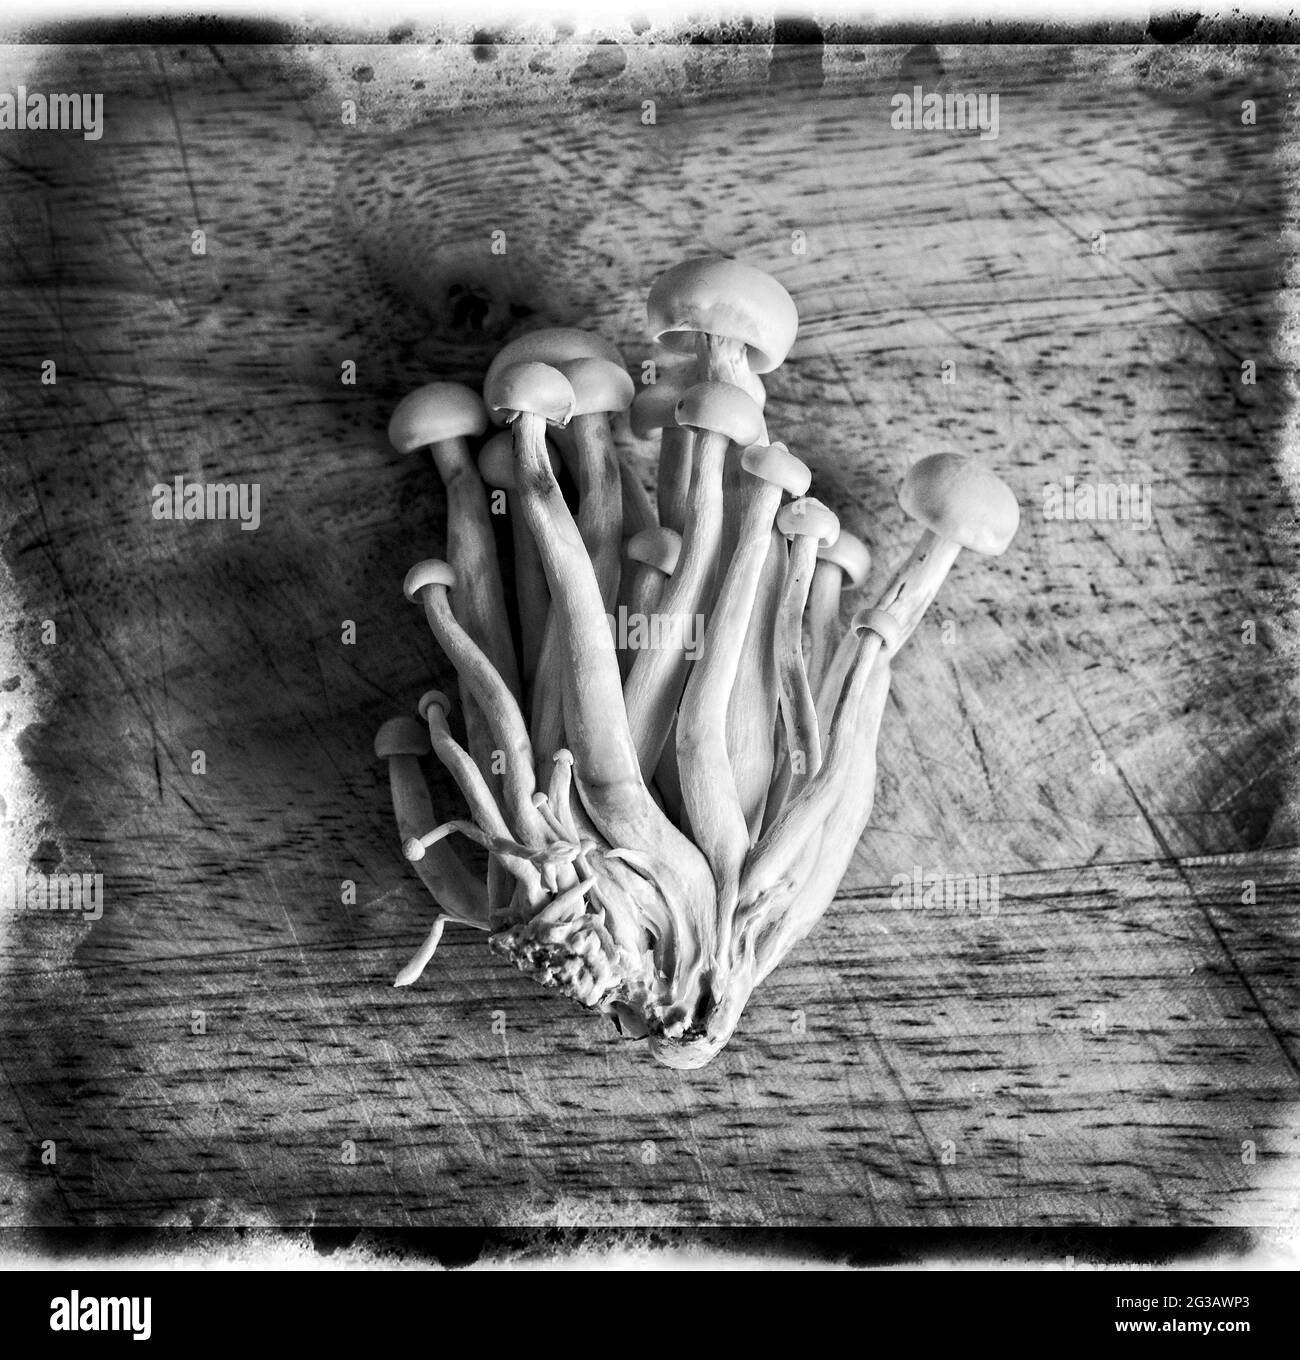 Enokitake Mushrooms fotografato su una tavola di legno ha dato un trattamento di post-produzione in bianco e nero con un bordo di emulsione Foto Stock